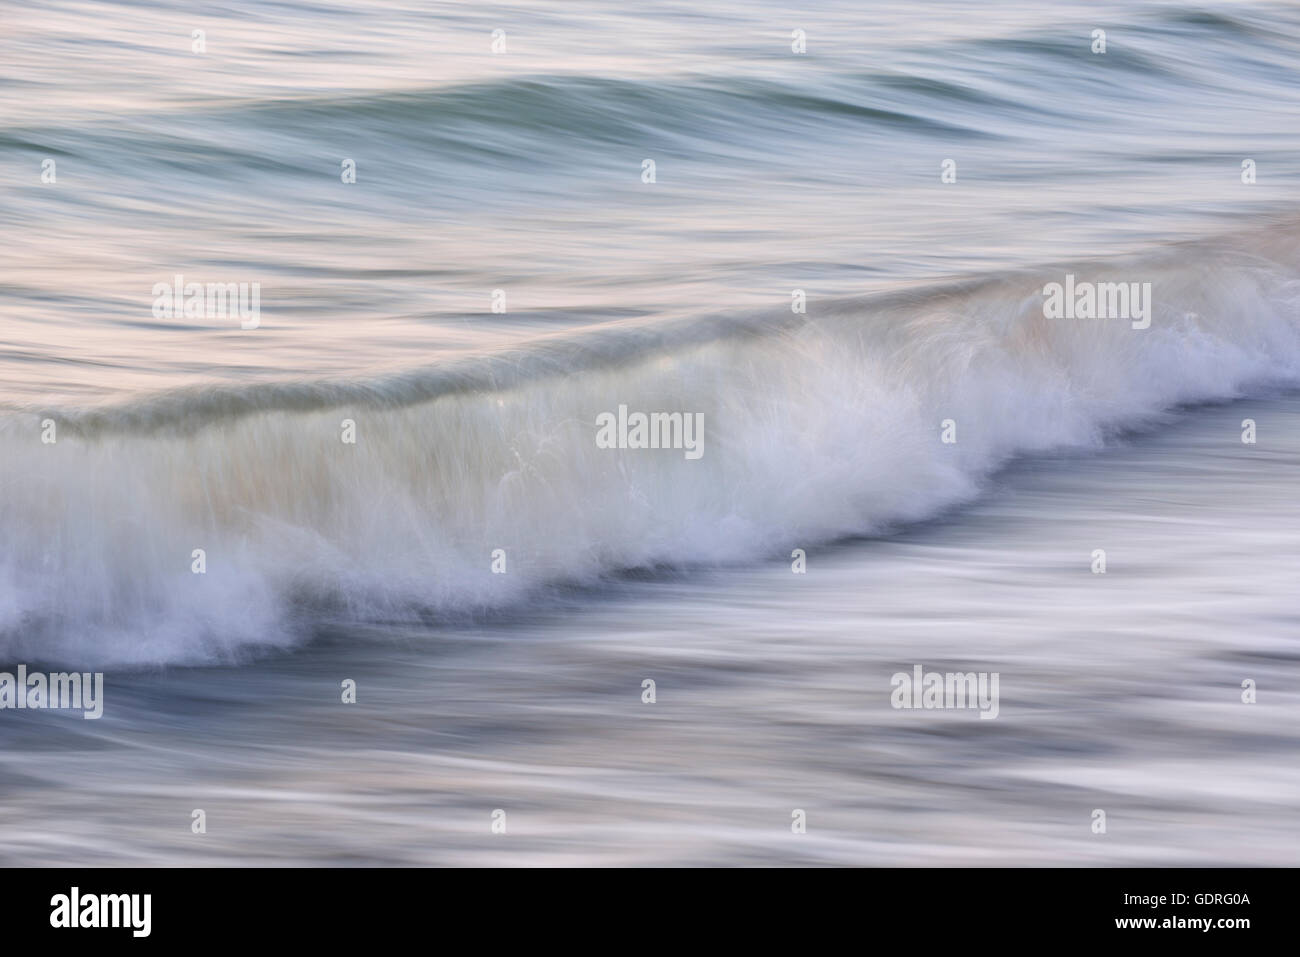 Les vagues dans la mer Baltique, un panoramique avec shot, Rügen, Mecklembourg-Poméranie-Occidentale, Allemagne Banque D'Images